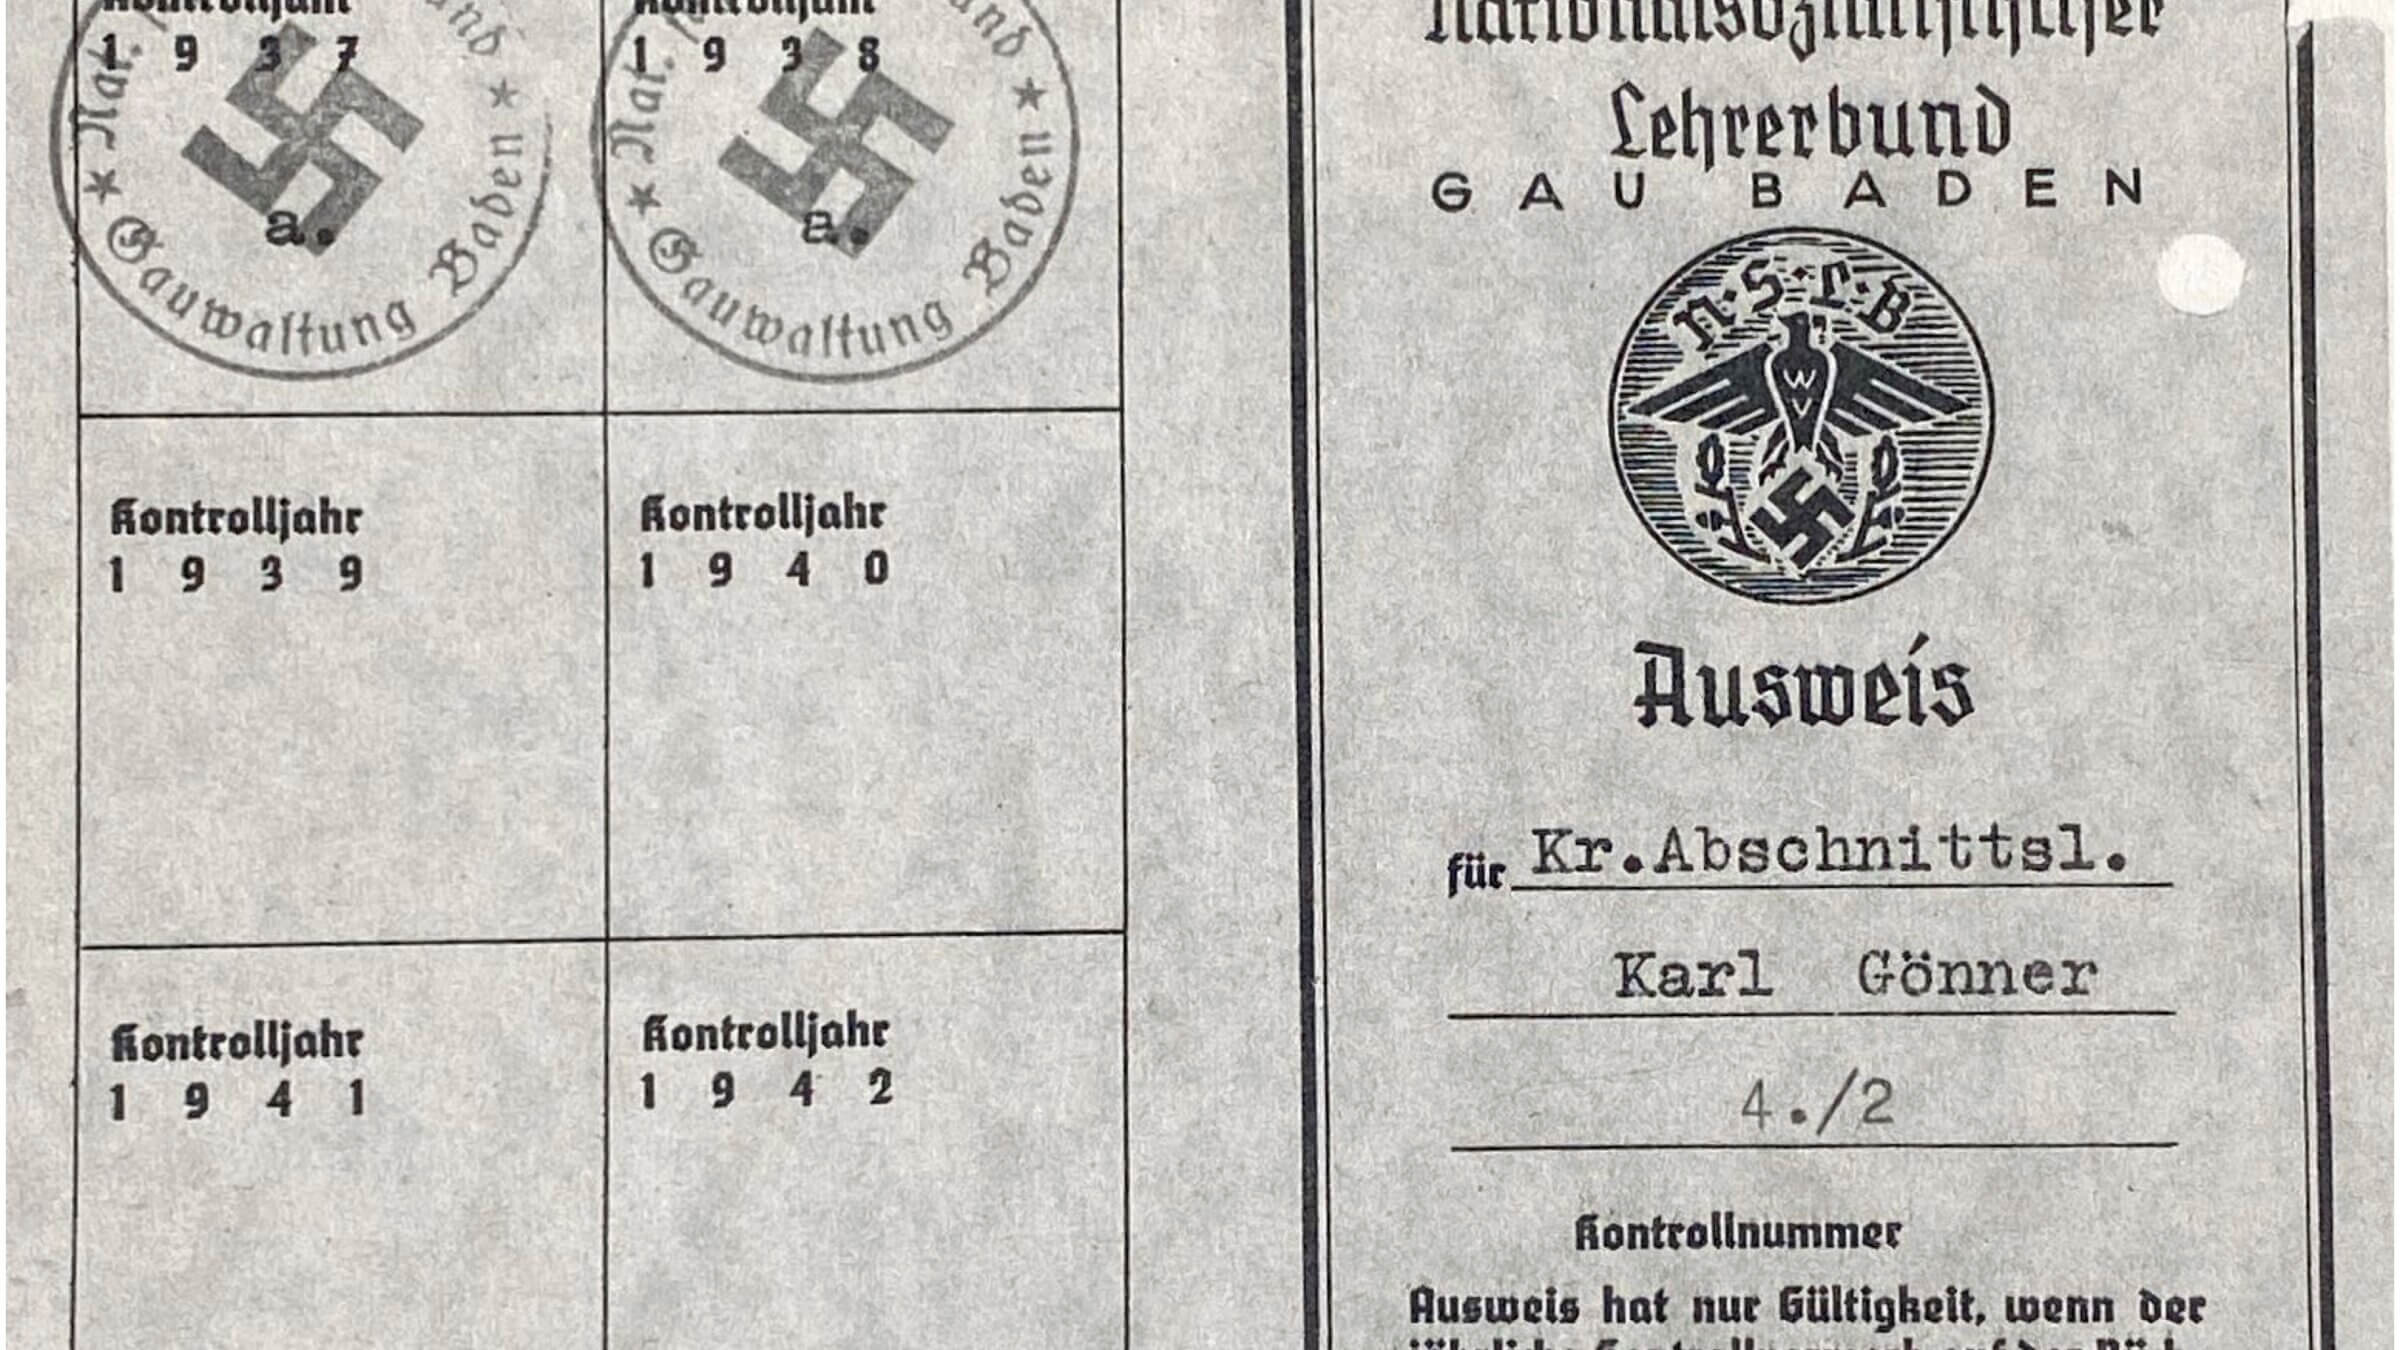 תעודת החבר של קרל גונר בליגת המורים הנאצית (צילום: Landesarchiv Baden Warttemberg/ Staatsarchiv Freiburg)